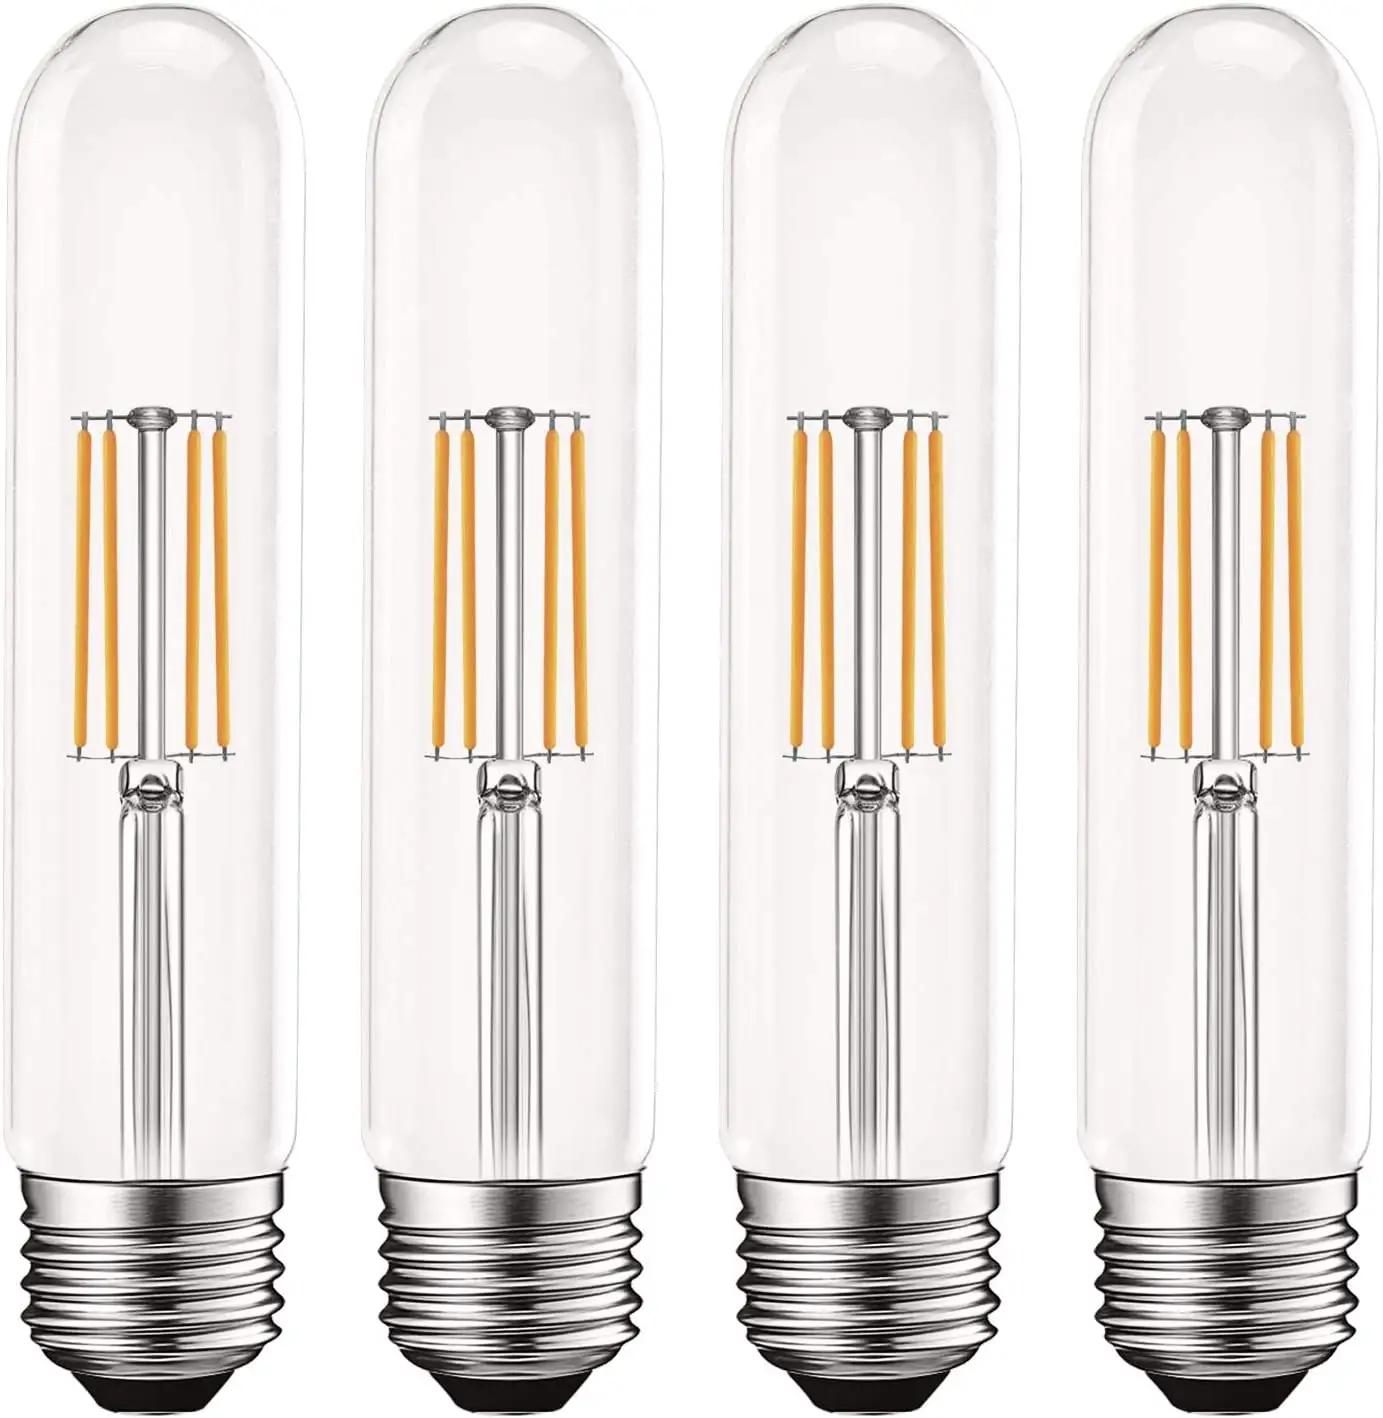 Винтажные светодиодные трубчатые лампы T9, эквивалент 60 Вт, 2700K теплый белый свет, 550 люмен, Диммируемые трубчатые лампы Эдисона 5 Вт